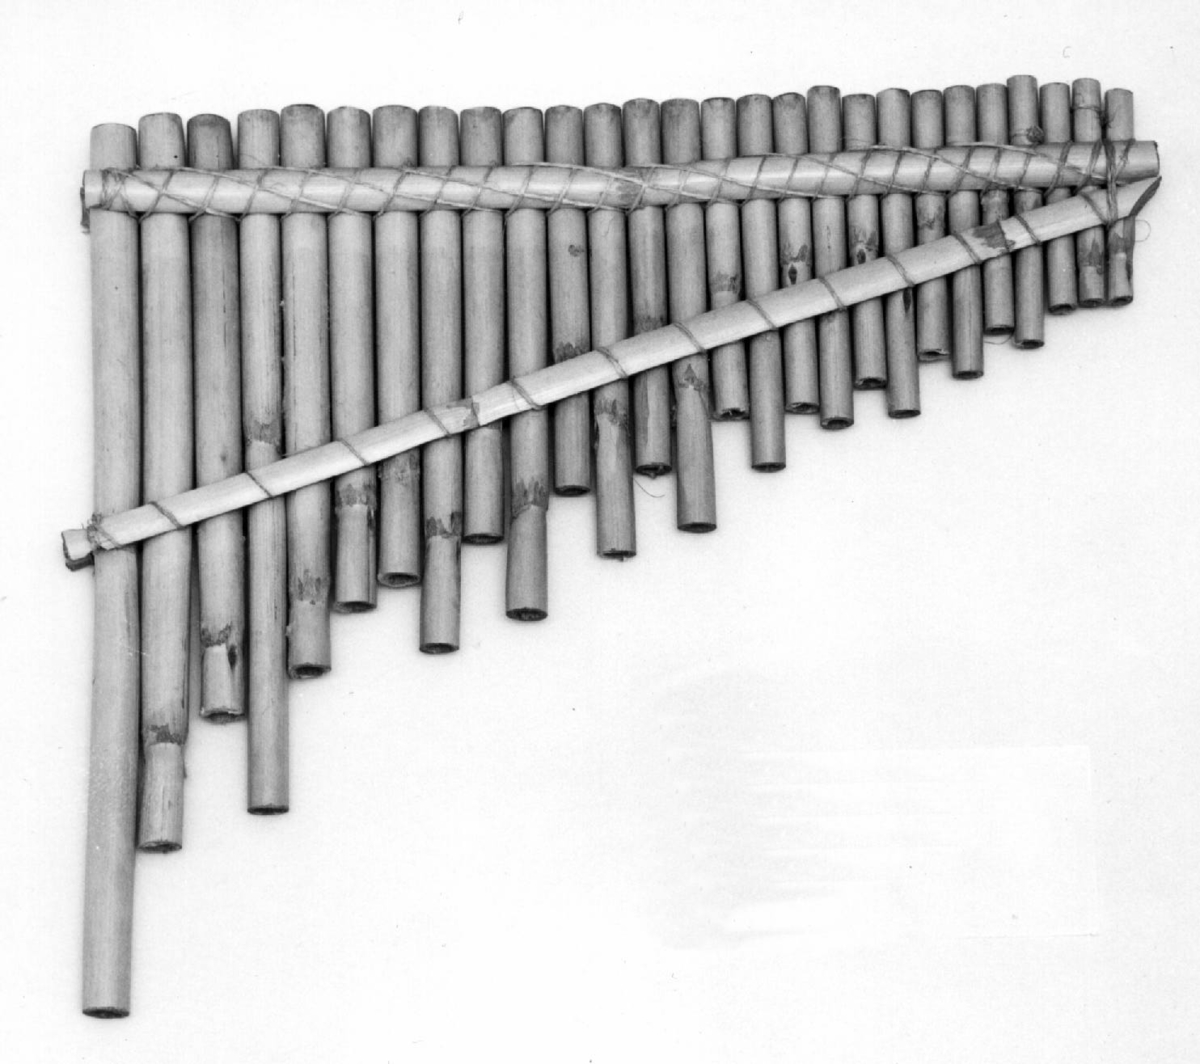 Består av 27 parallelle bambusrør av avtagende lengde, bundetfast til hverandre i flåteform. Lukket i nedre ende.

